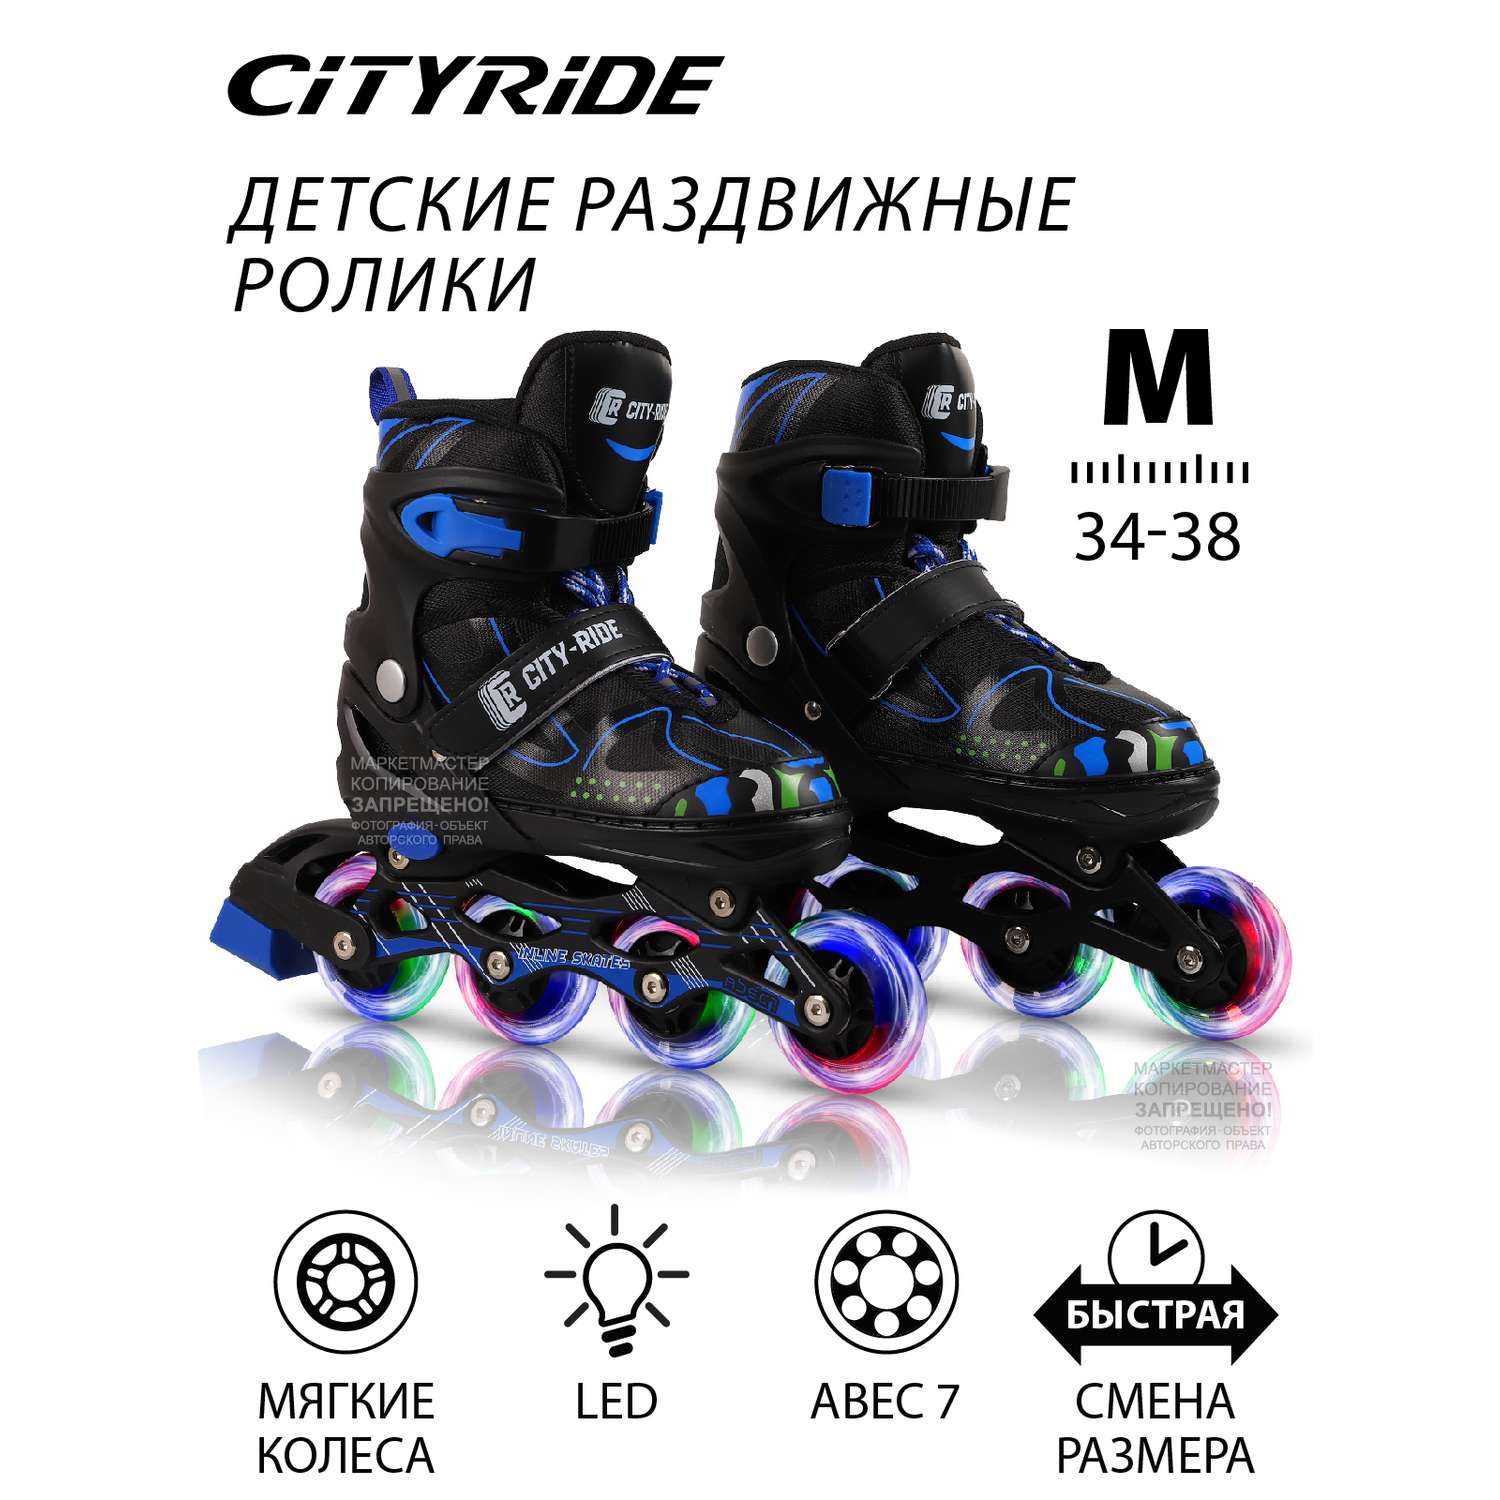 Роликовые коньки CITYRIDE PU все колеса светящиеся подшипники ABEC 7 ботинок М - фото 1